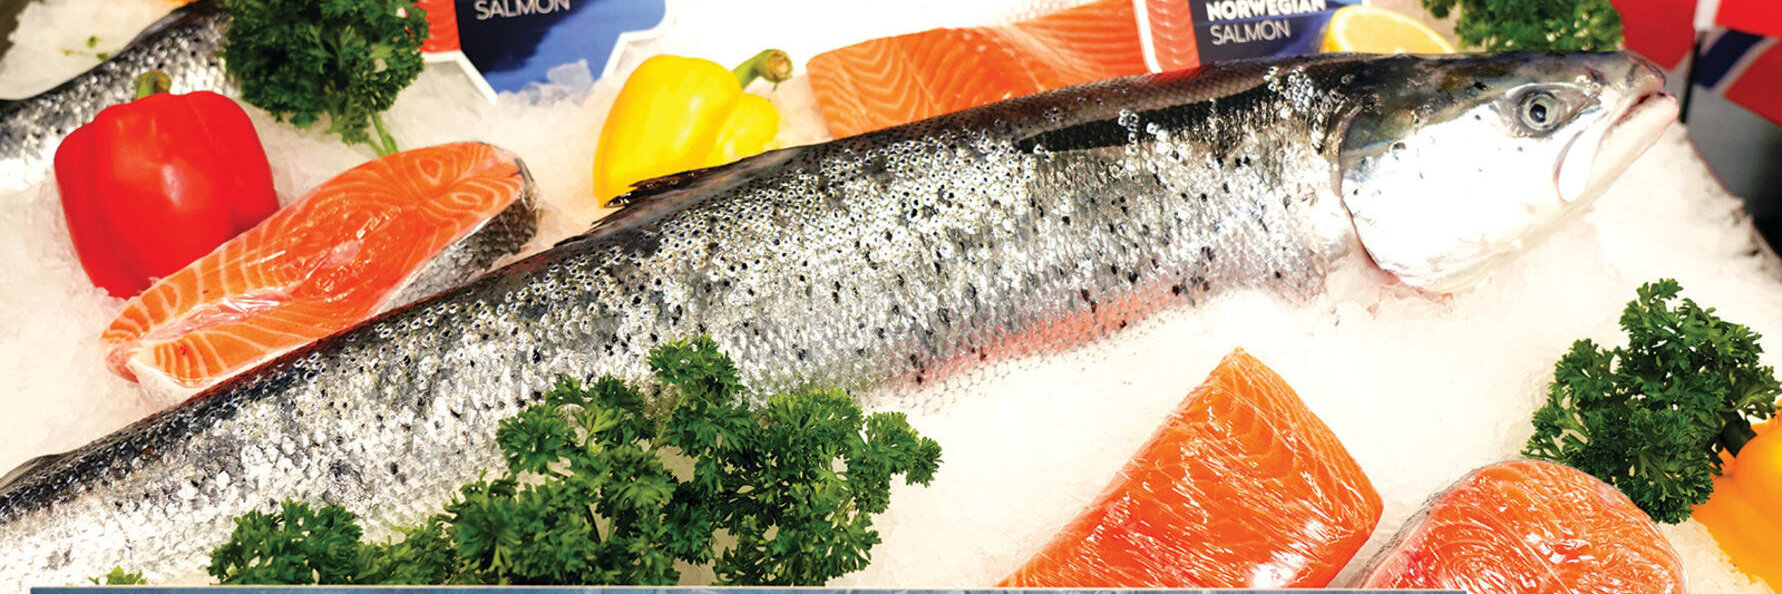 Norwegian Seafood Council presentó su visión sobre precios e impuestos en la acuicultura